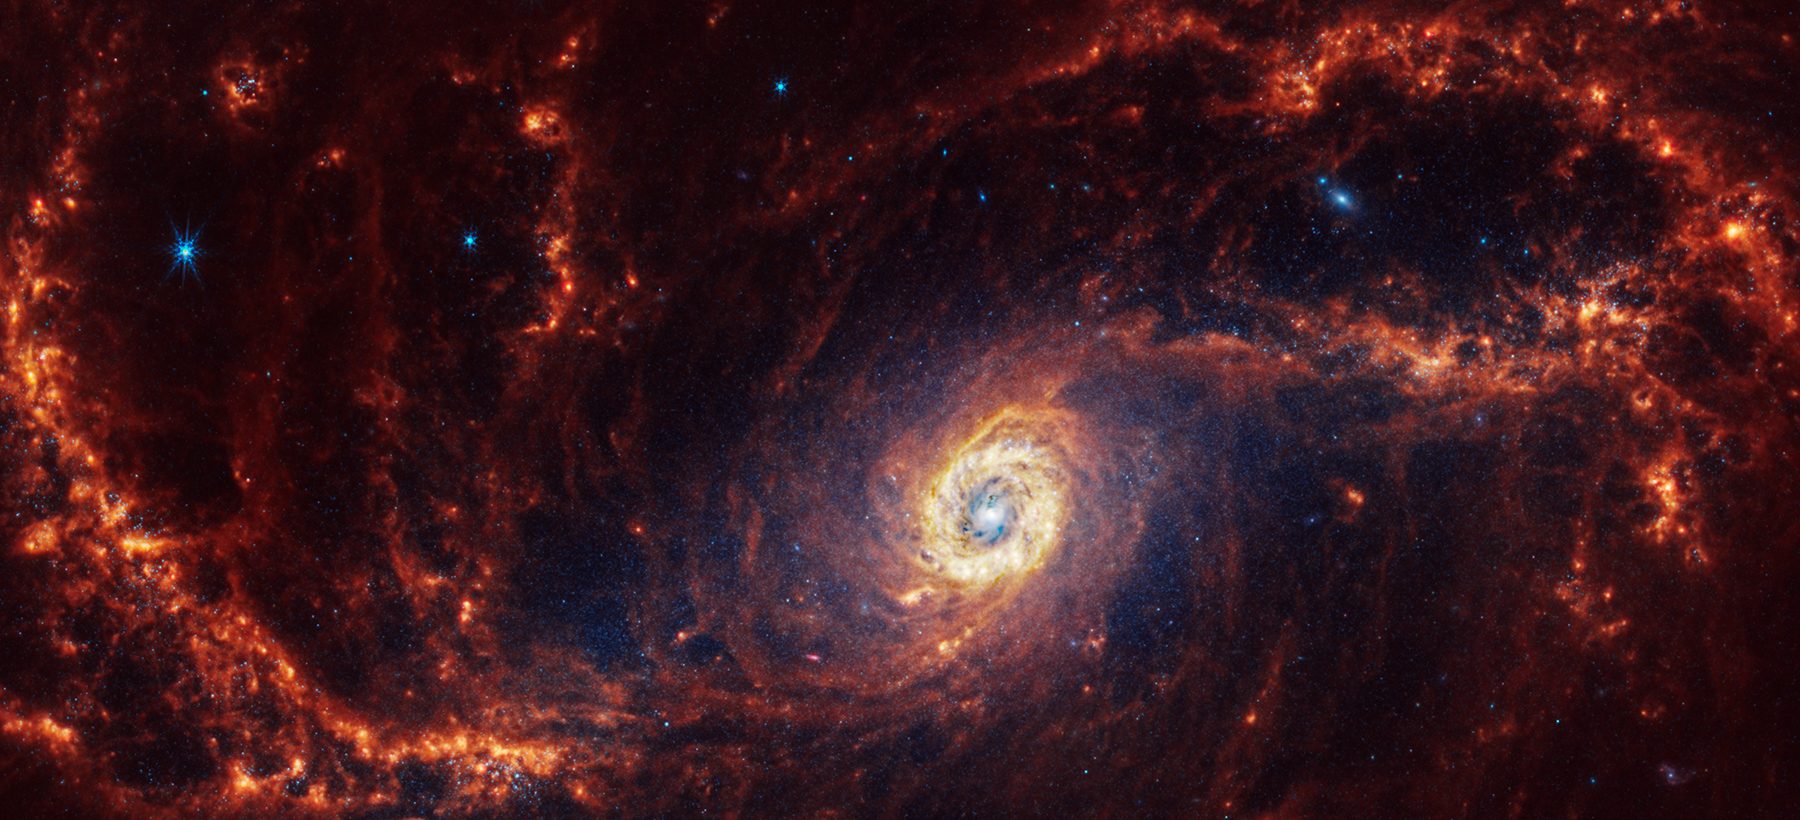 Спиральная галактика NGC 1672 в созвездии Золотая Рыба. Расстояние от Земли&nbsp;&mdash; 60 млн световых лет